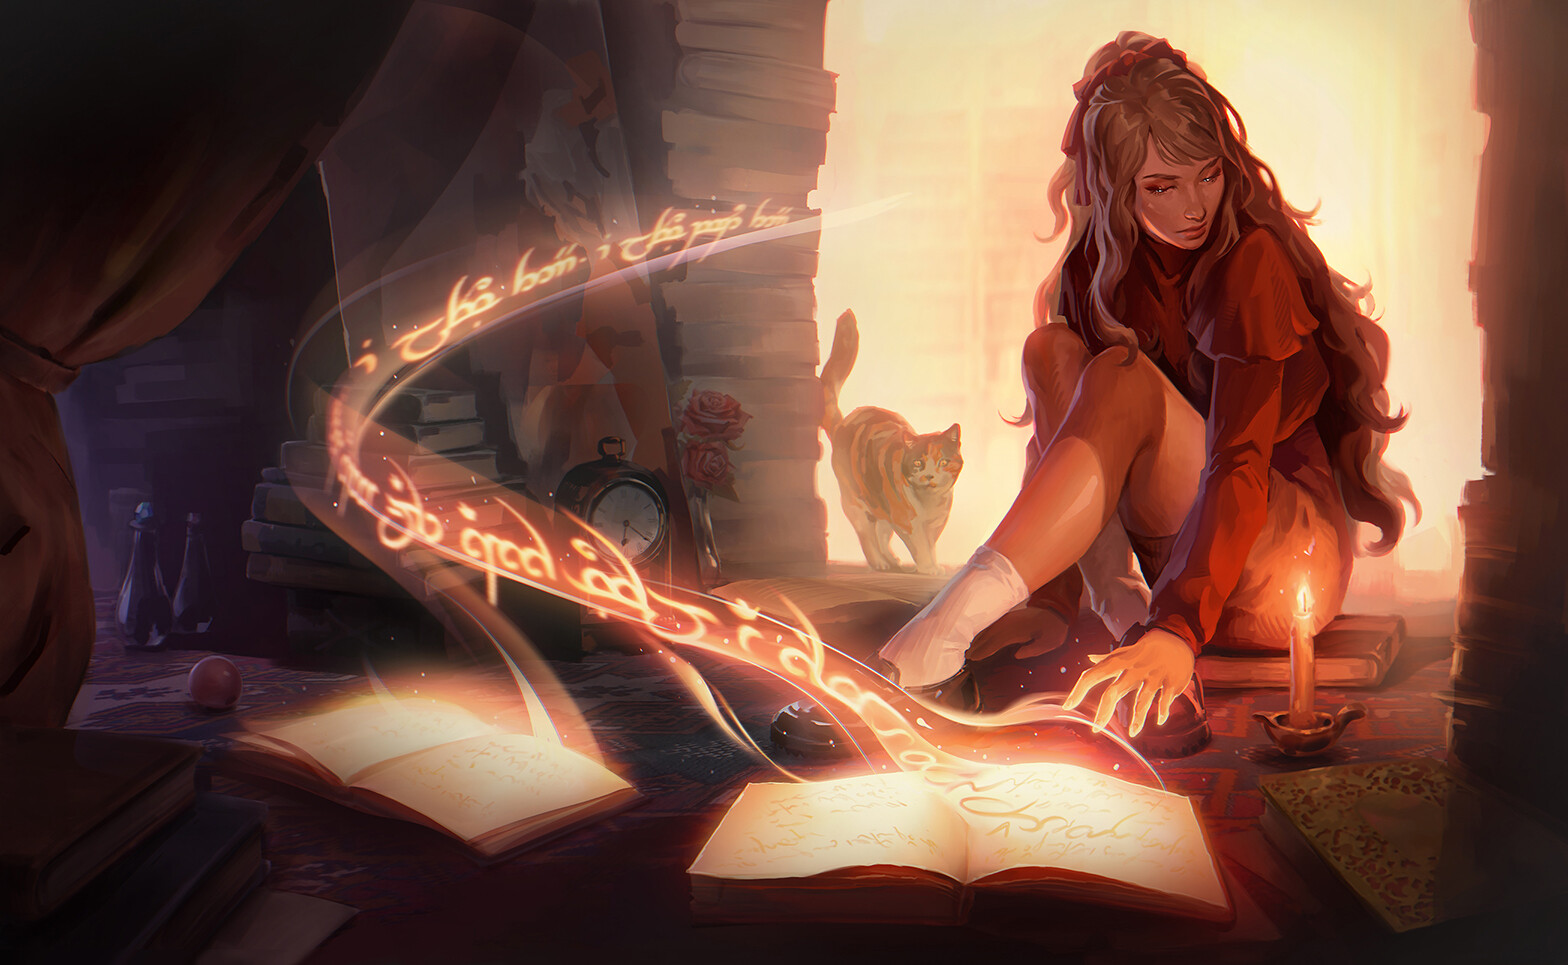 Фото Девушка сидит на полу перед горящей свечой и открытой книгой, и появившимся из нее шлейфом, позади стоит кошка, автор p-ivetto